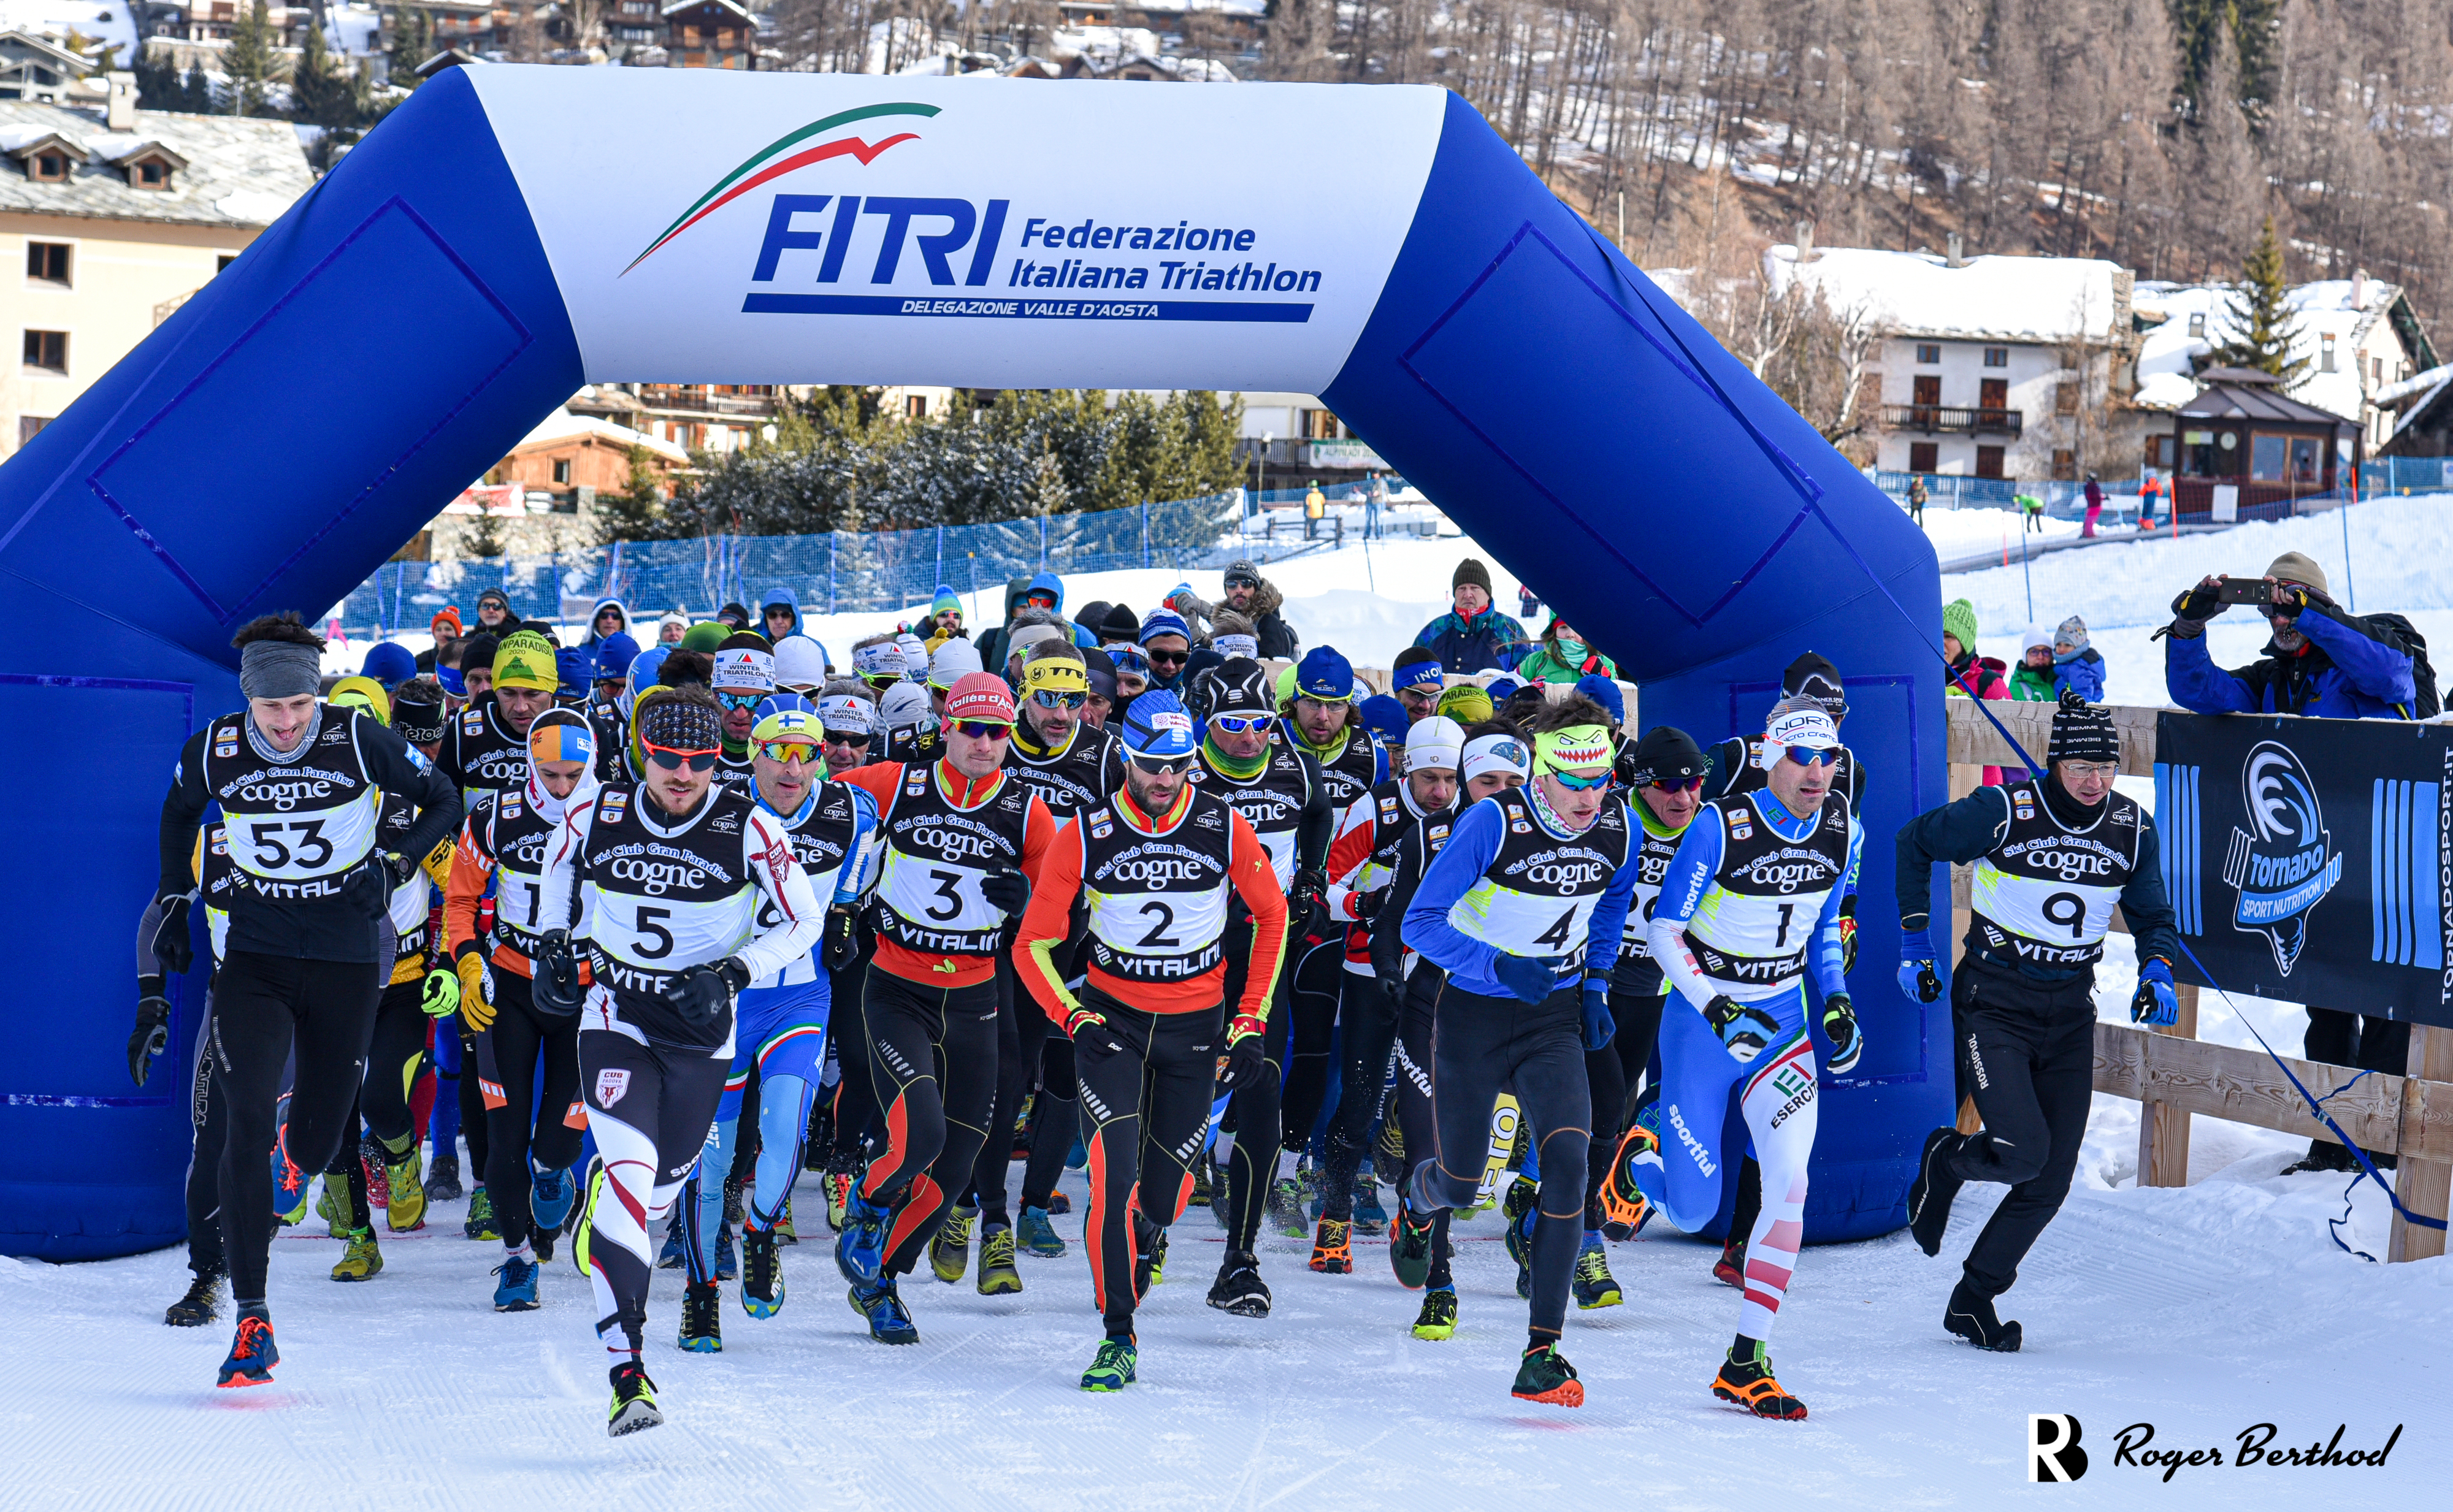 Winter Triathlon, campionati italiani a squadre: le start list della gara di Cogne